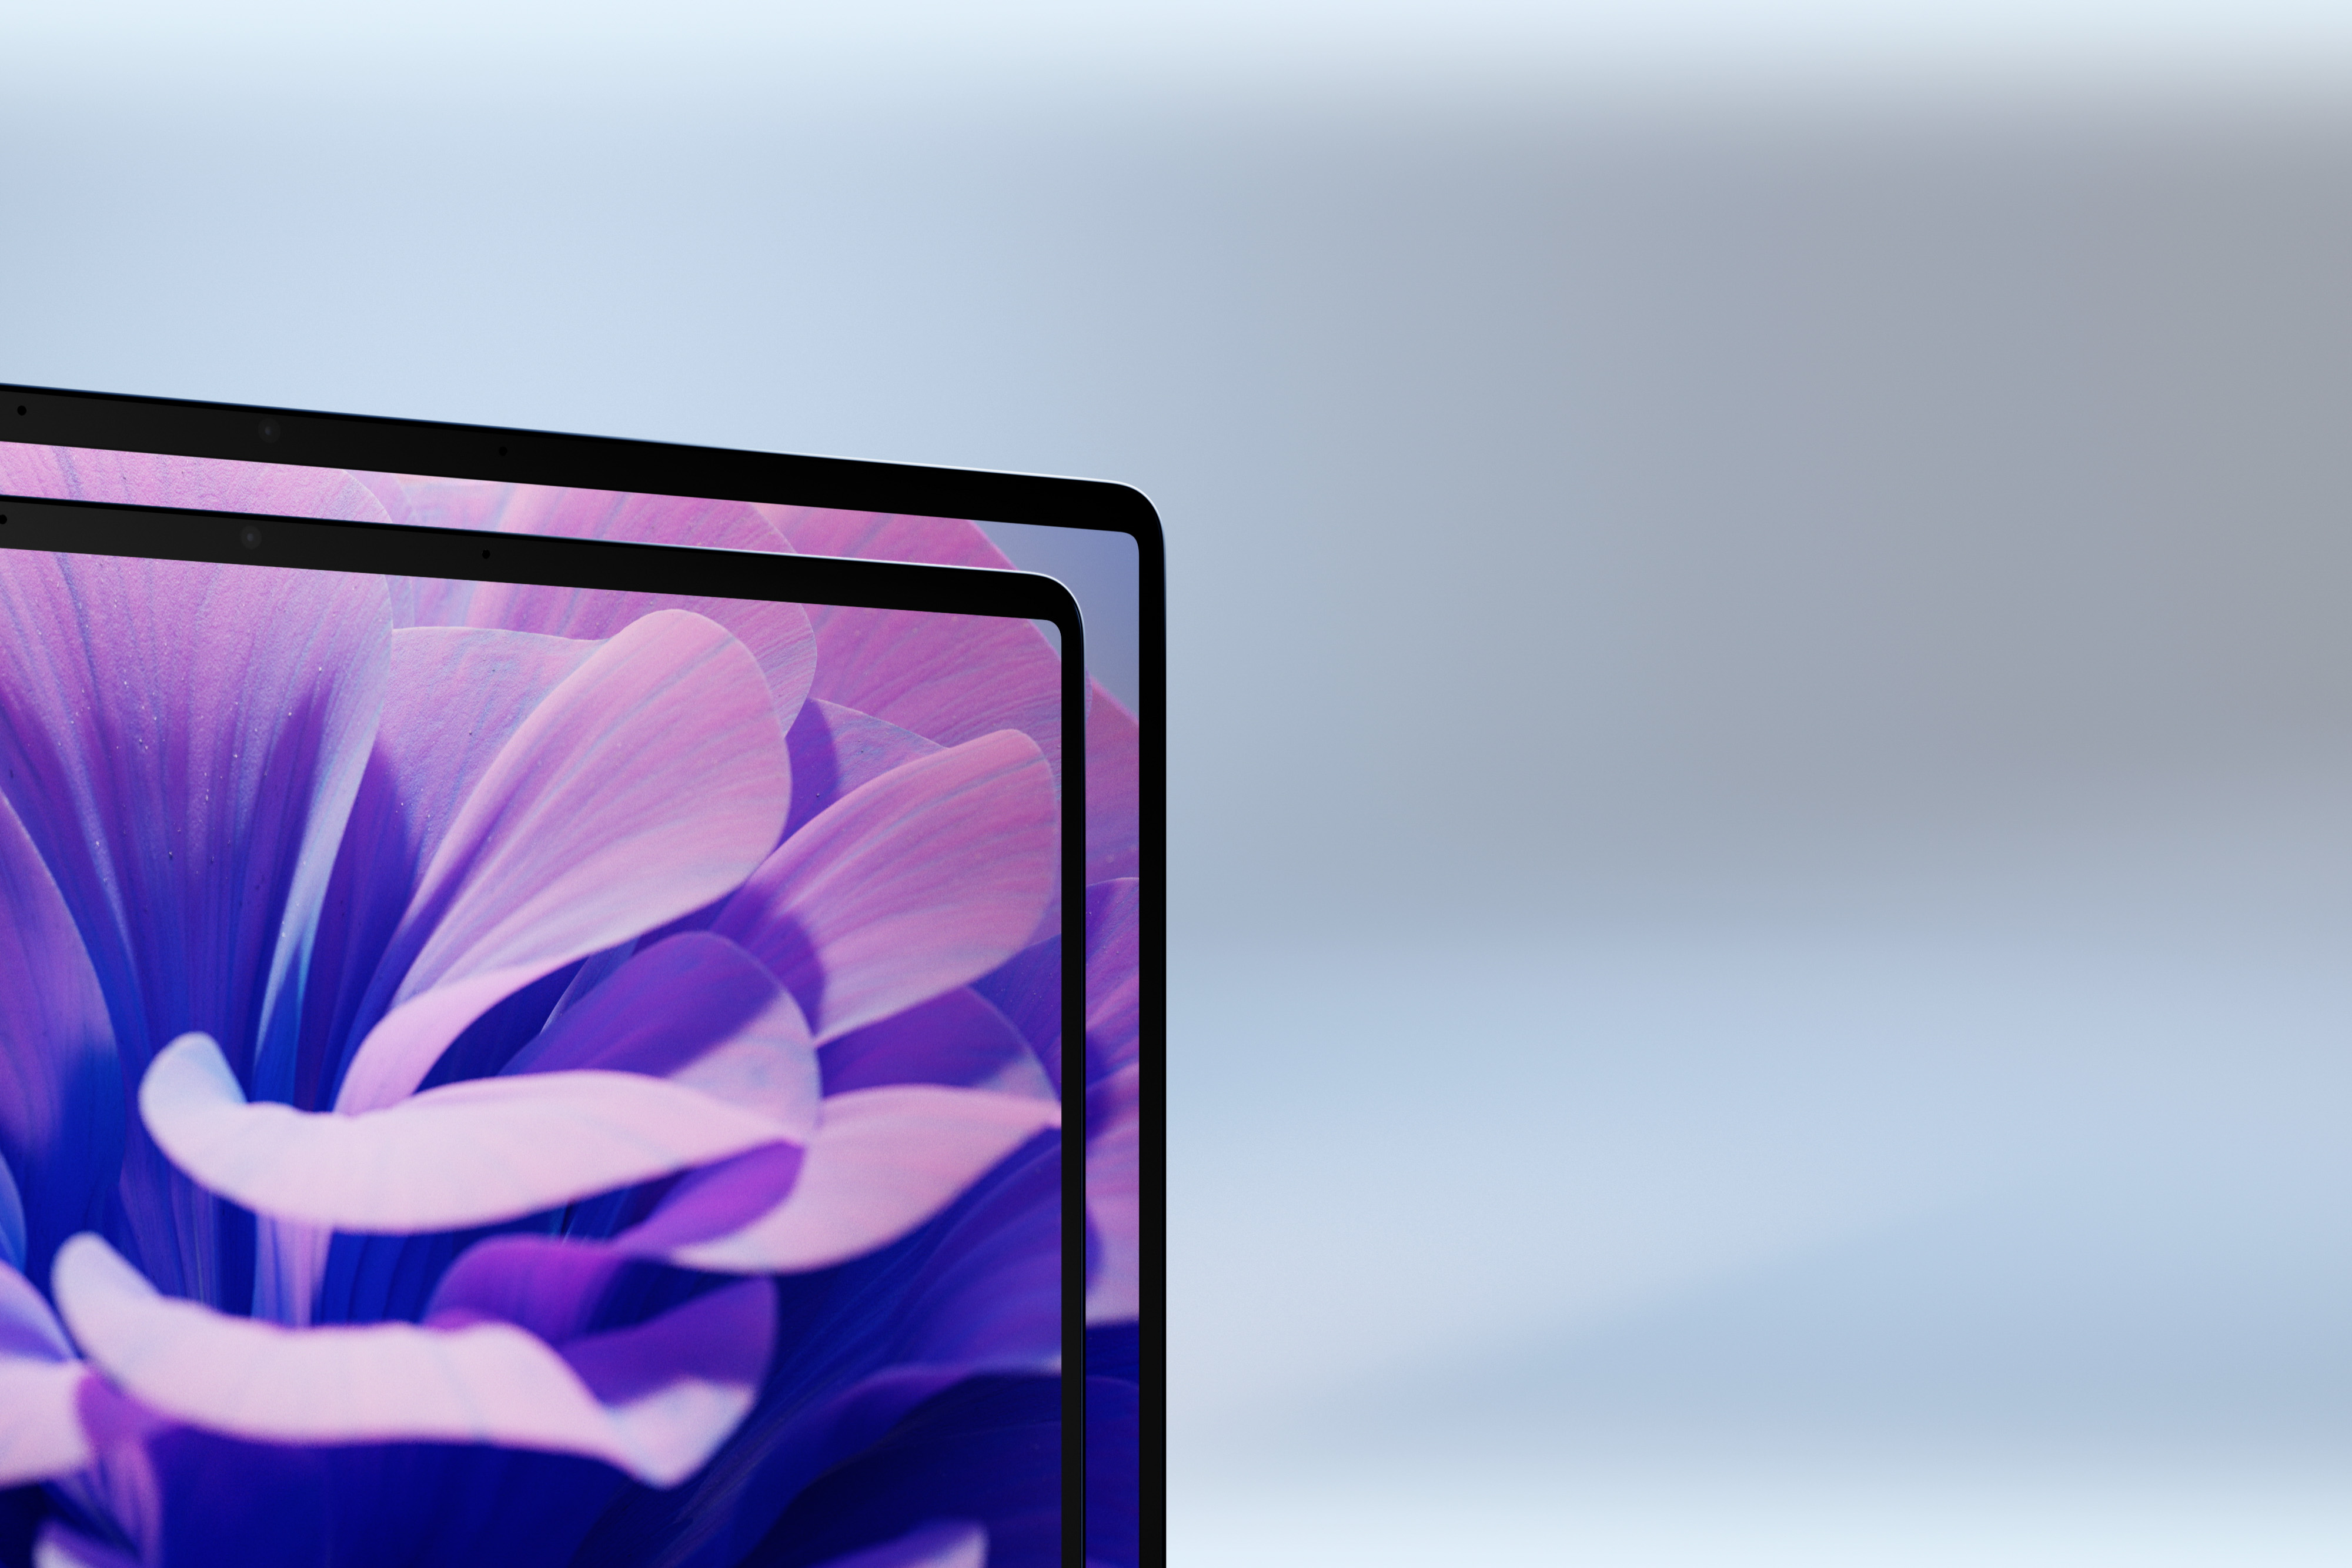 Posterafbeelding van een presentatievideo van de Surface Laptop waarin twee schermformaten, dunne randen en scherm worden getoond.